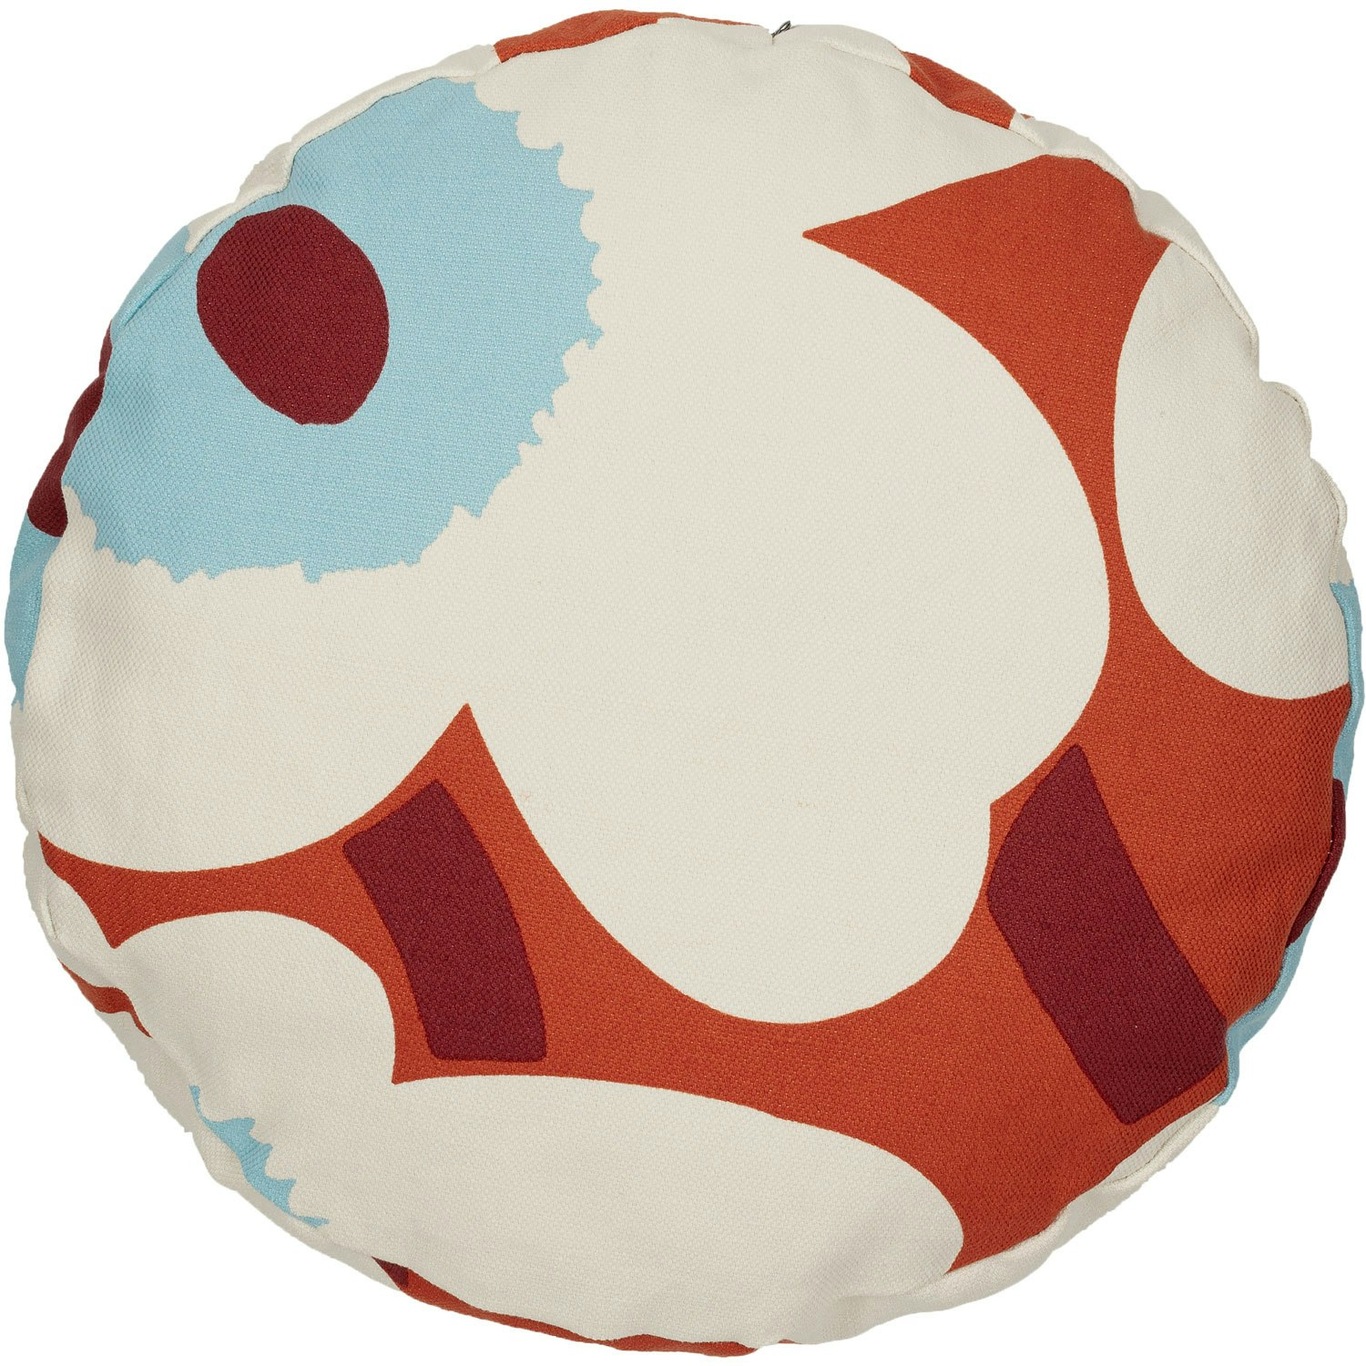 Unikko Cushion Cover Round 43 cm, Orange / Off-white / Light Blue -  Marimekko @ RoyalDesign